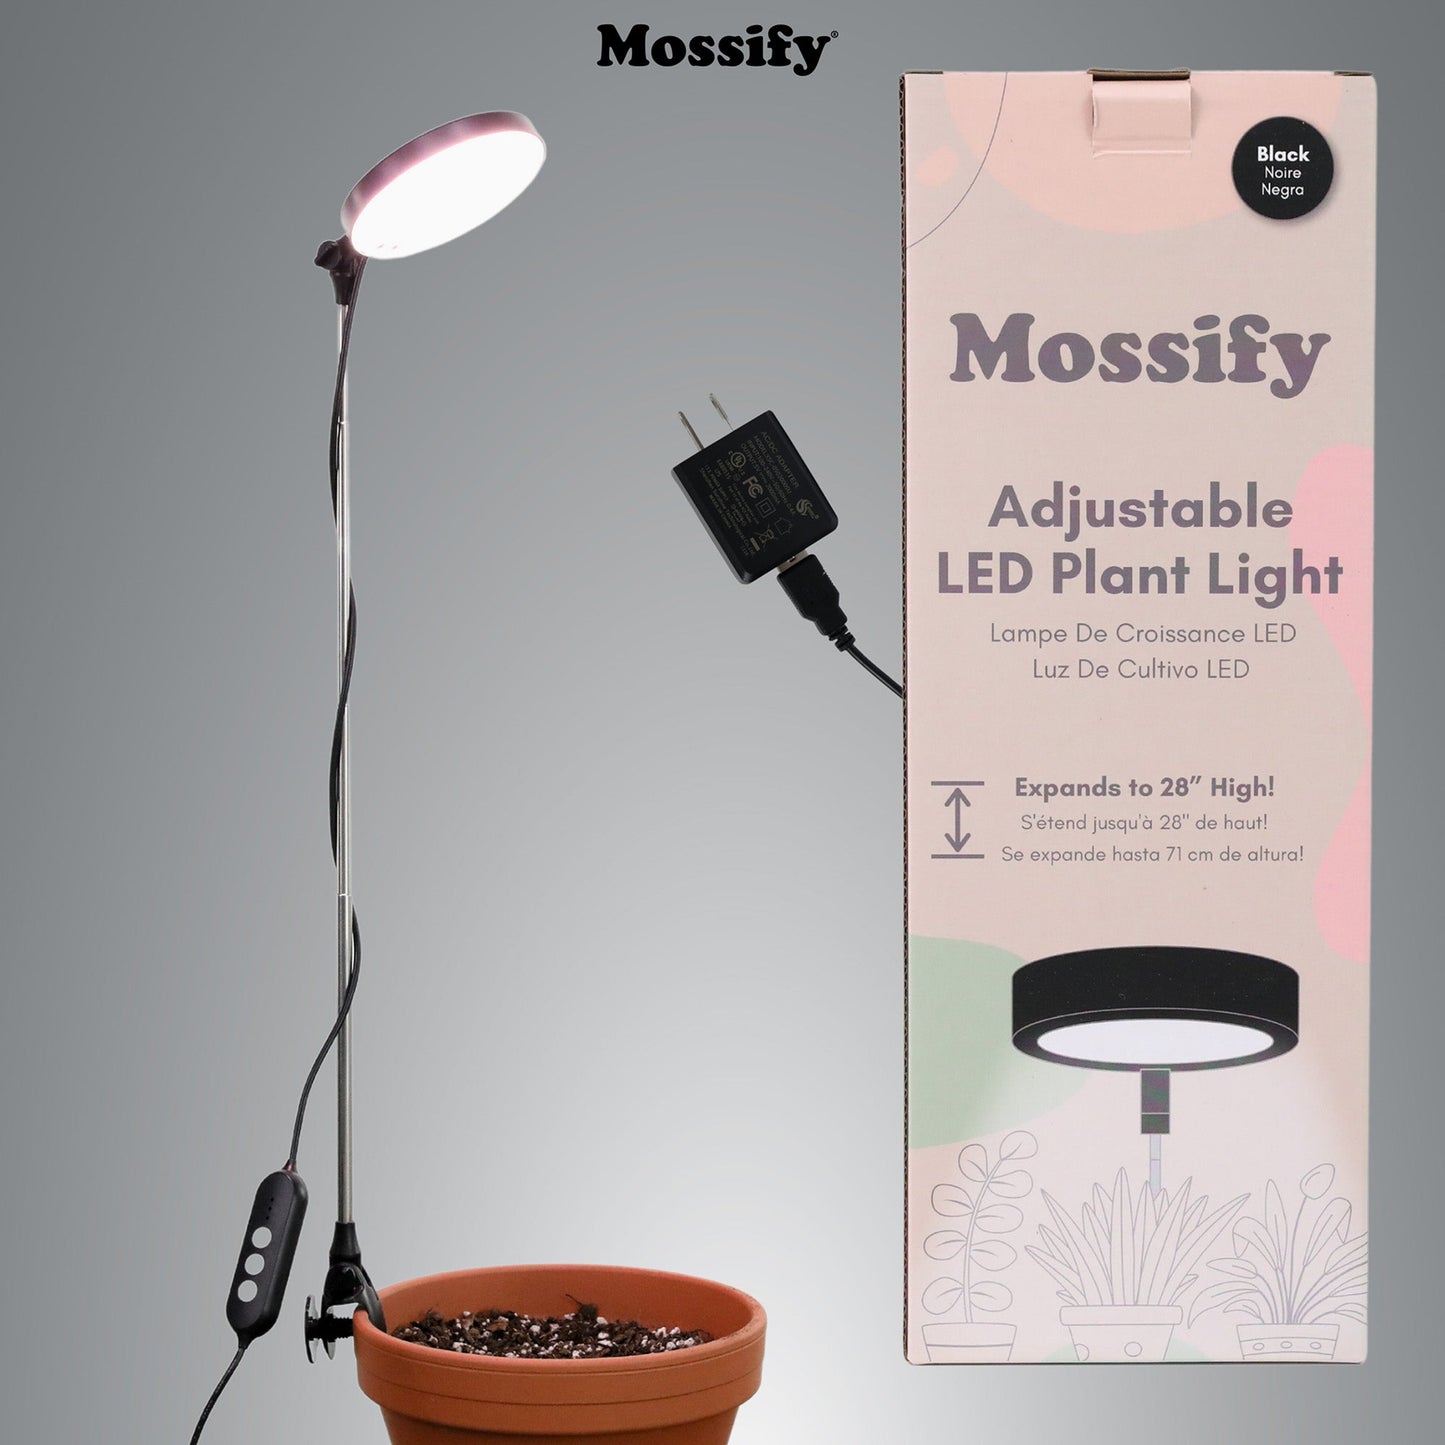 Adjustable LED plant light